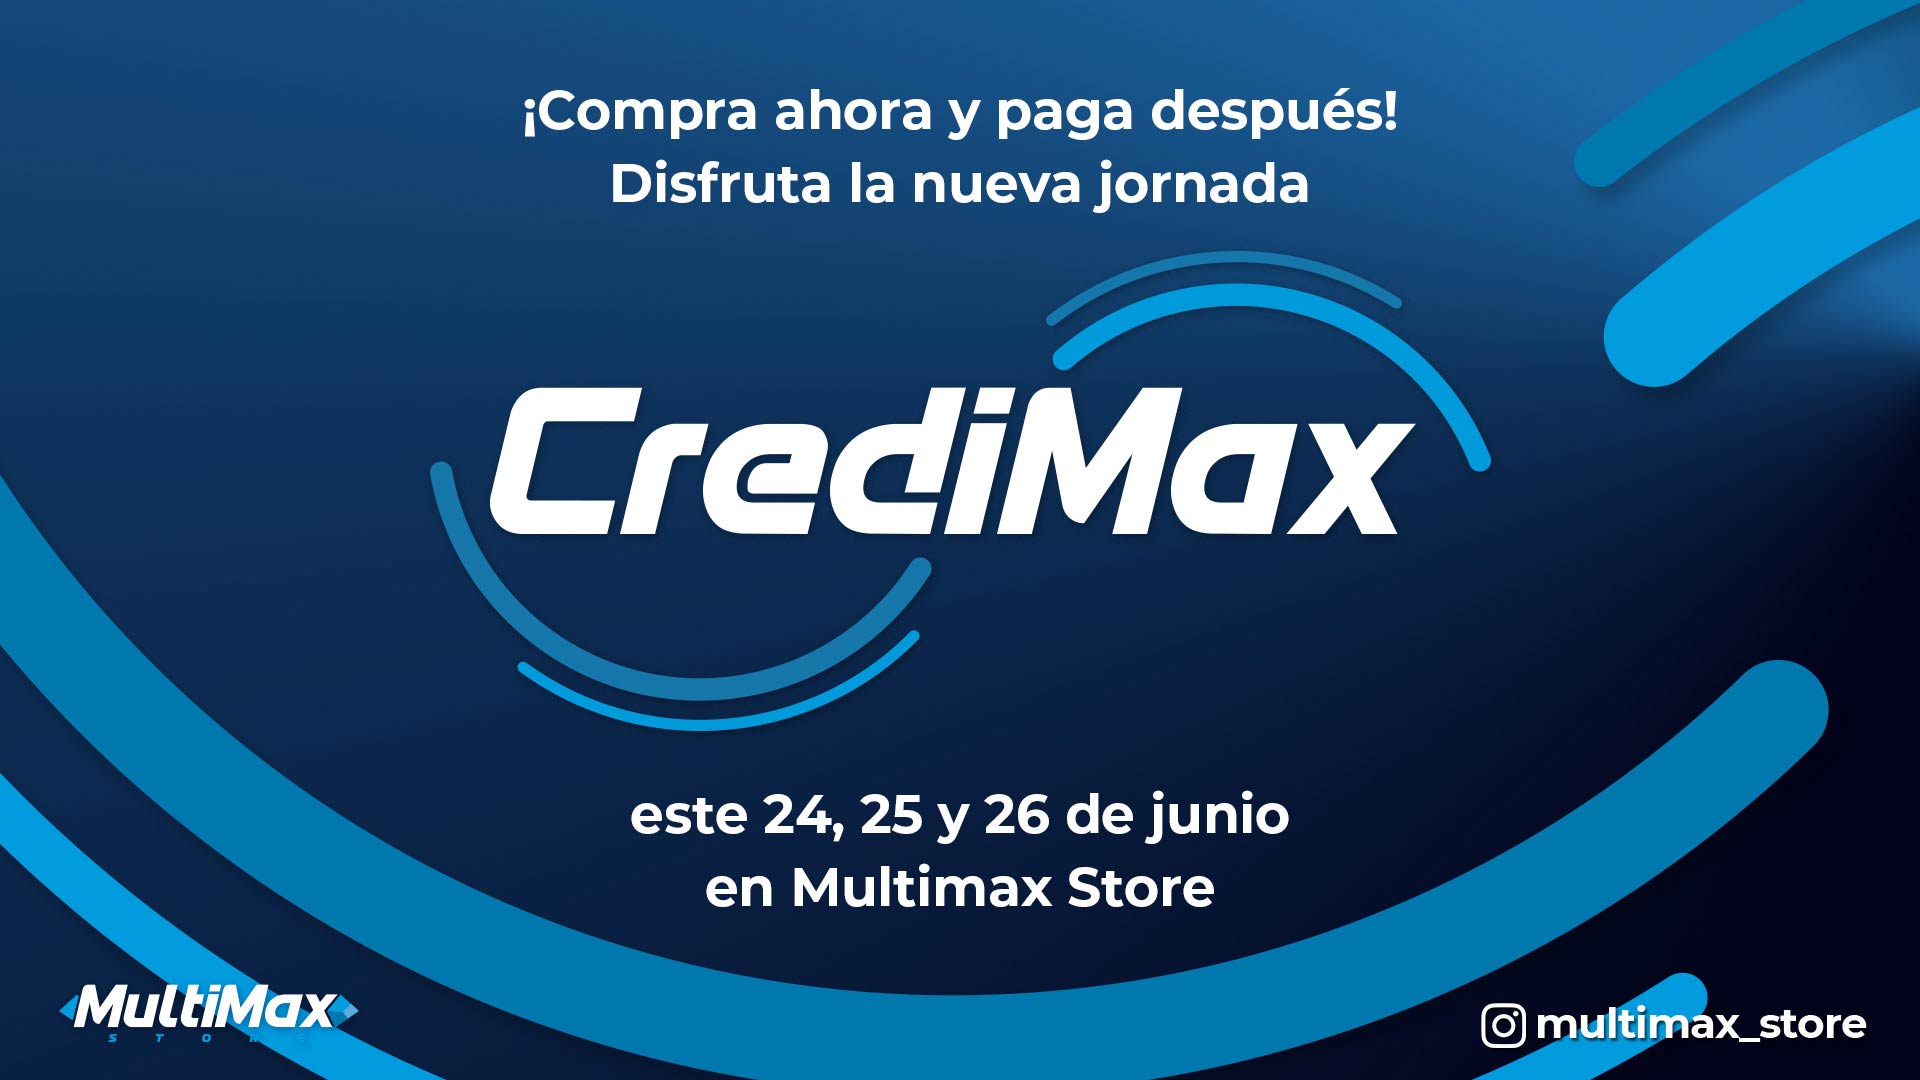 ¡Compra ahora y paga después! Disfruta la nueva jornada CrediMax este 24, 25 y 26 de junio en Multimax Store